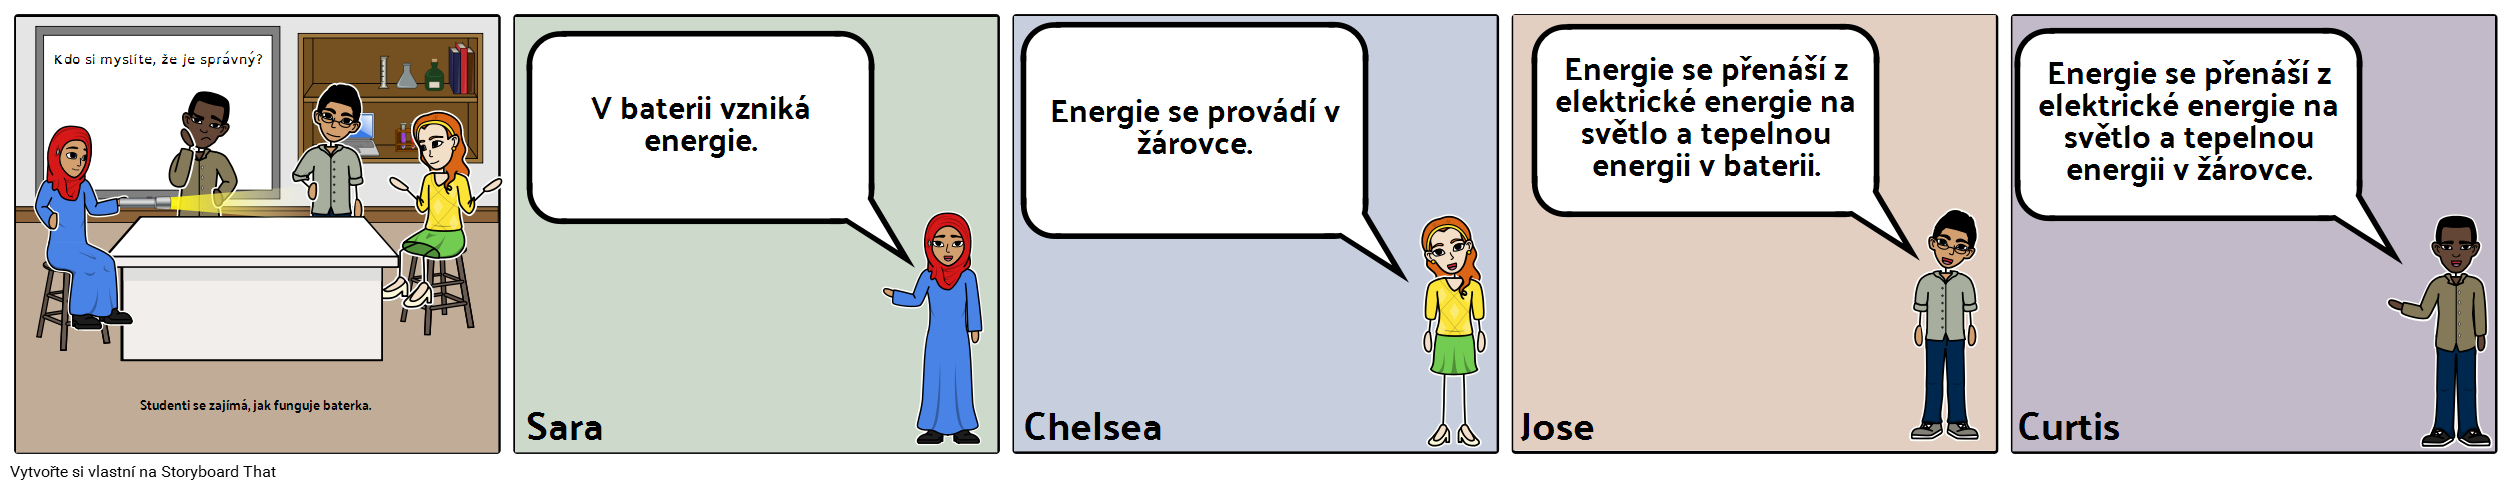 Diskuse Storyboard - ES - Energie